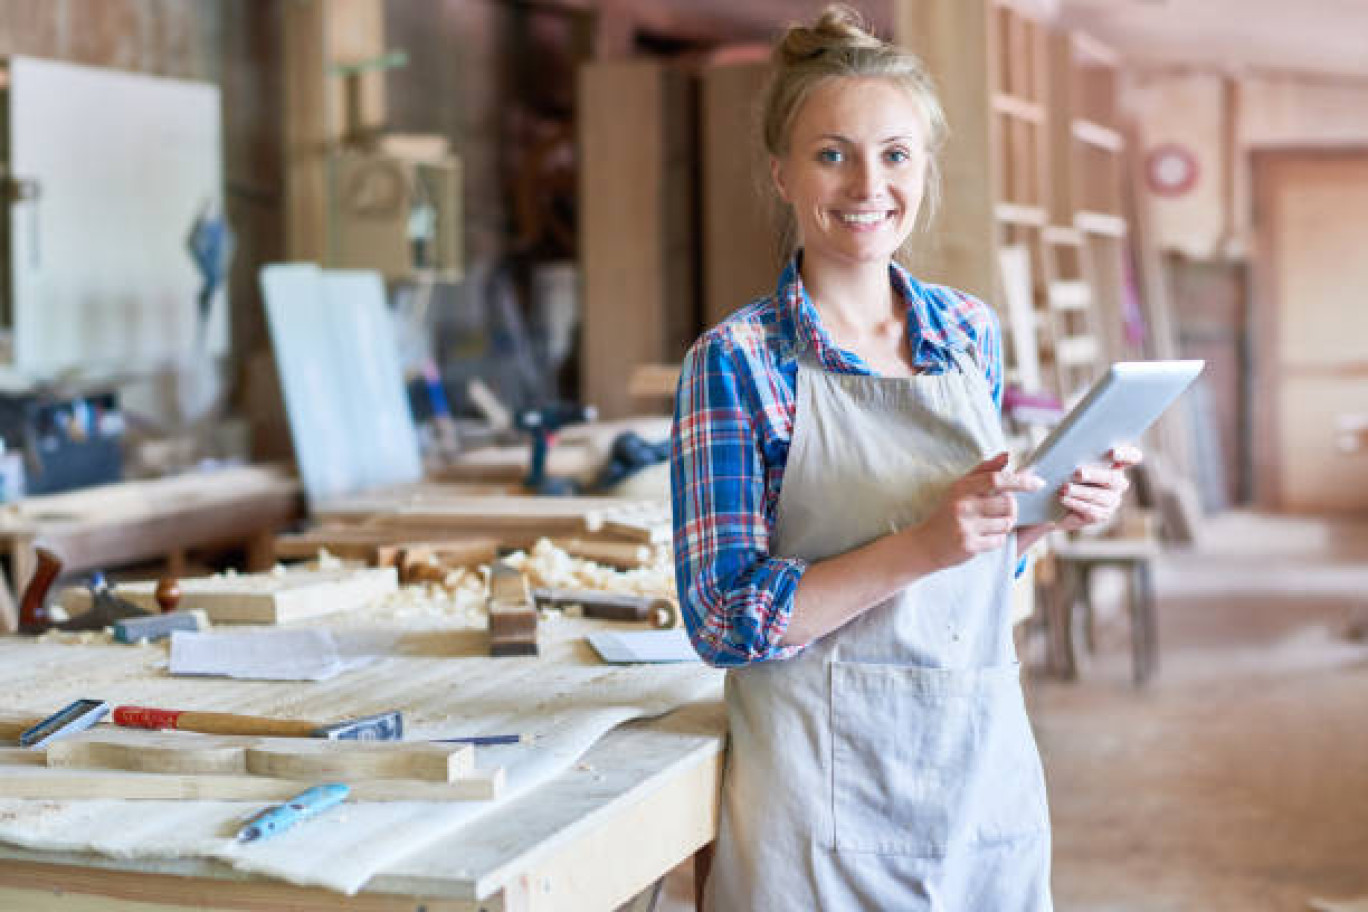 L'artisanat féminin se diversifie et s'inscrit comme une vraie source de réussite pour beaucoup de cheffes d'entreprise, salariées, apprenties.  